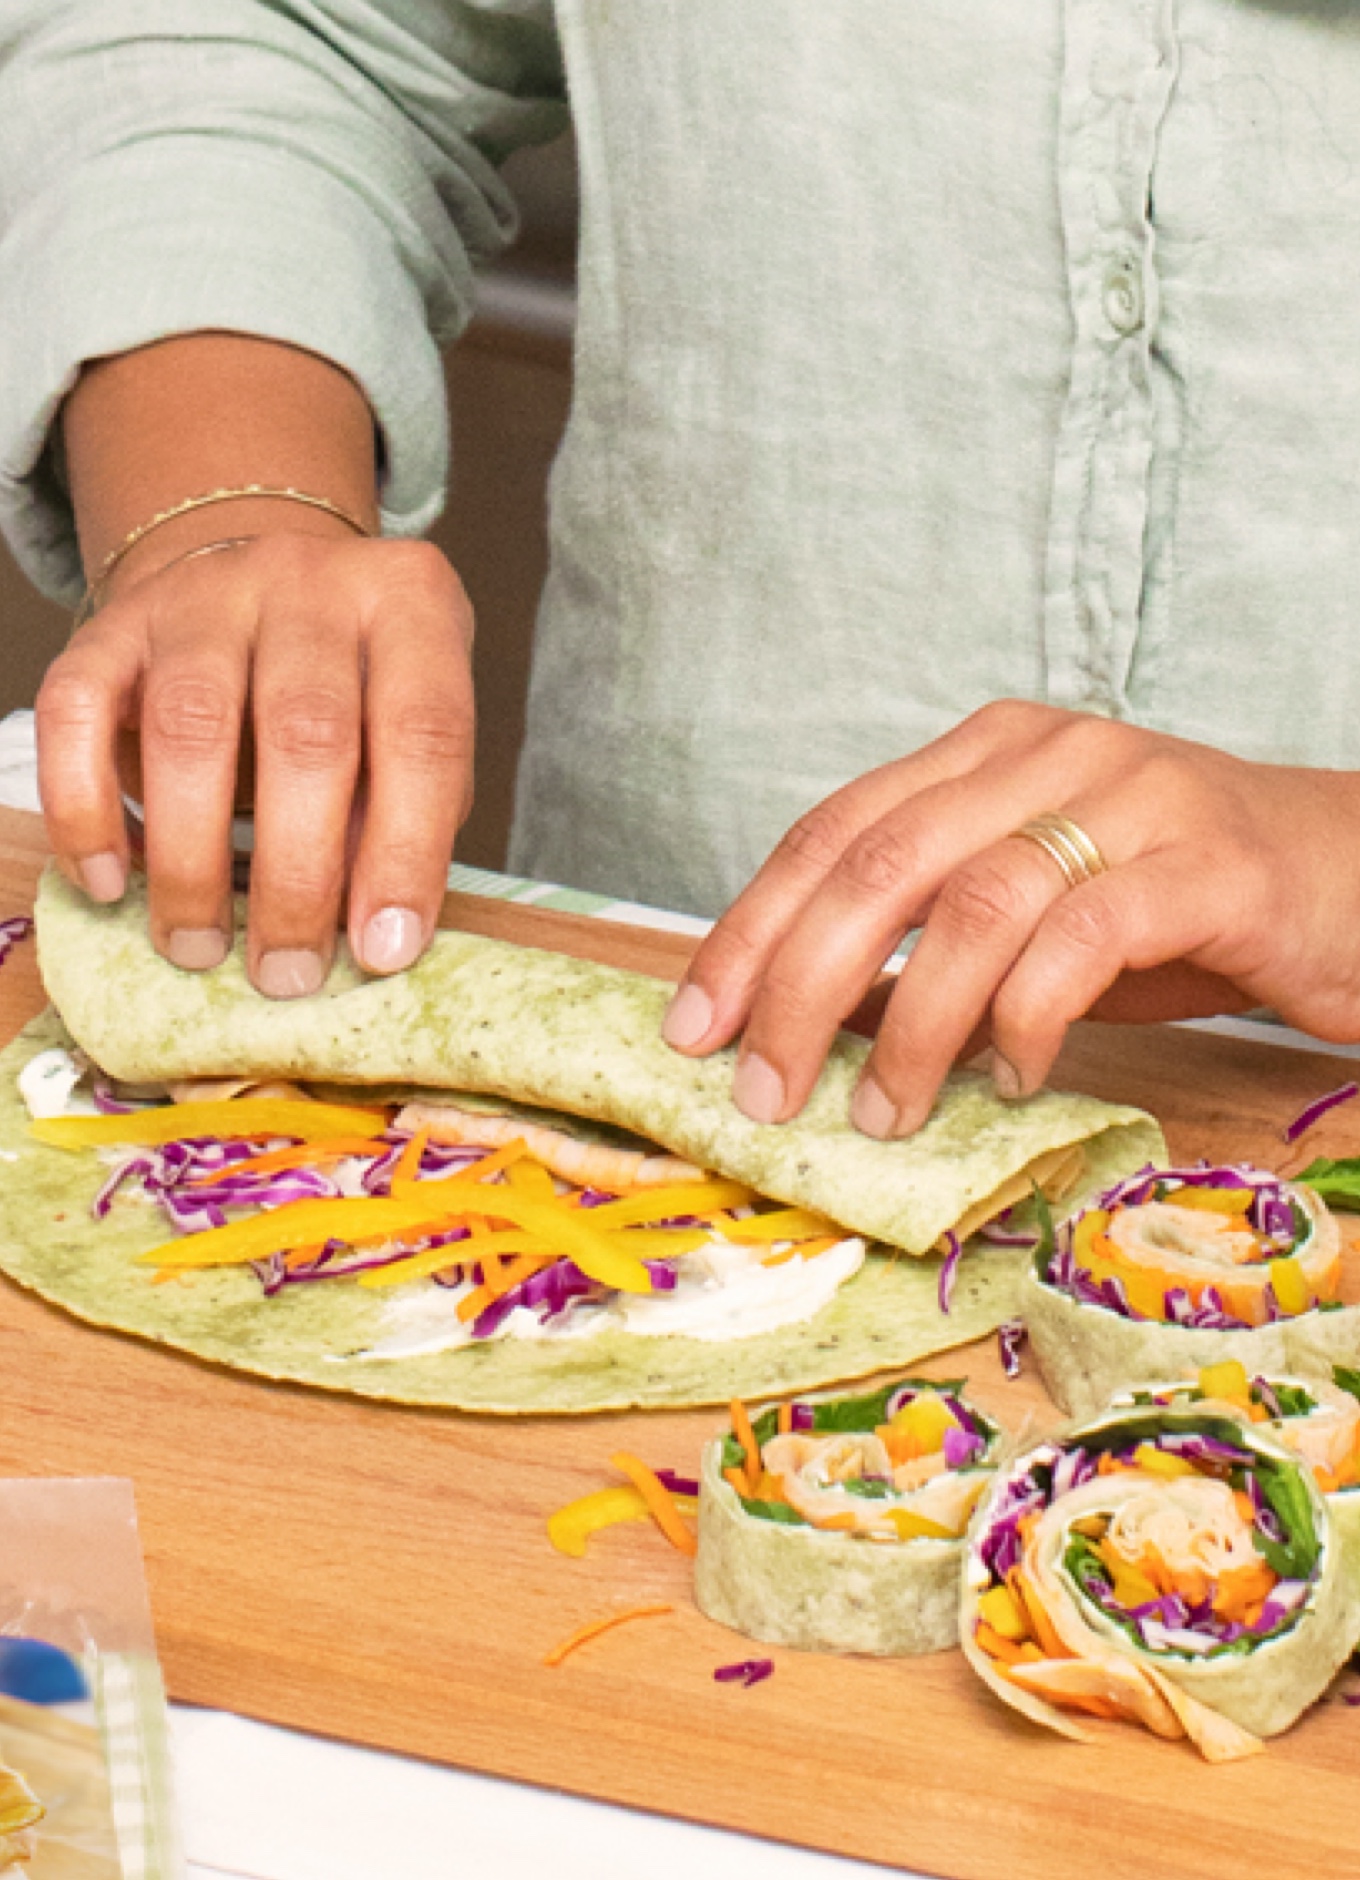 Une personne confectionnant des roulés végétaux de spirales arc-en-ciel accompagnés de légumes frais et de tranches de rôti de poulet halal.